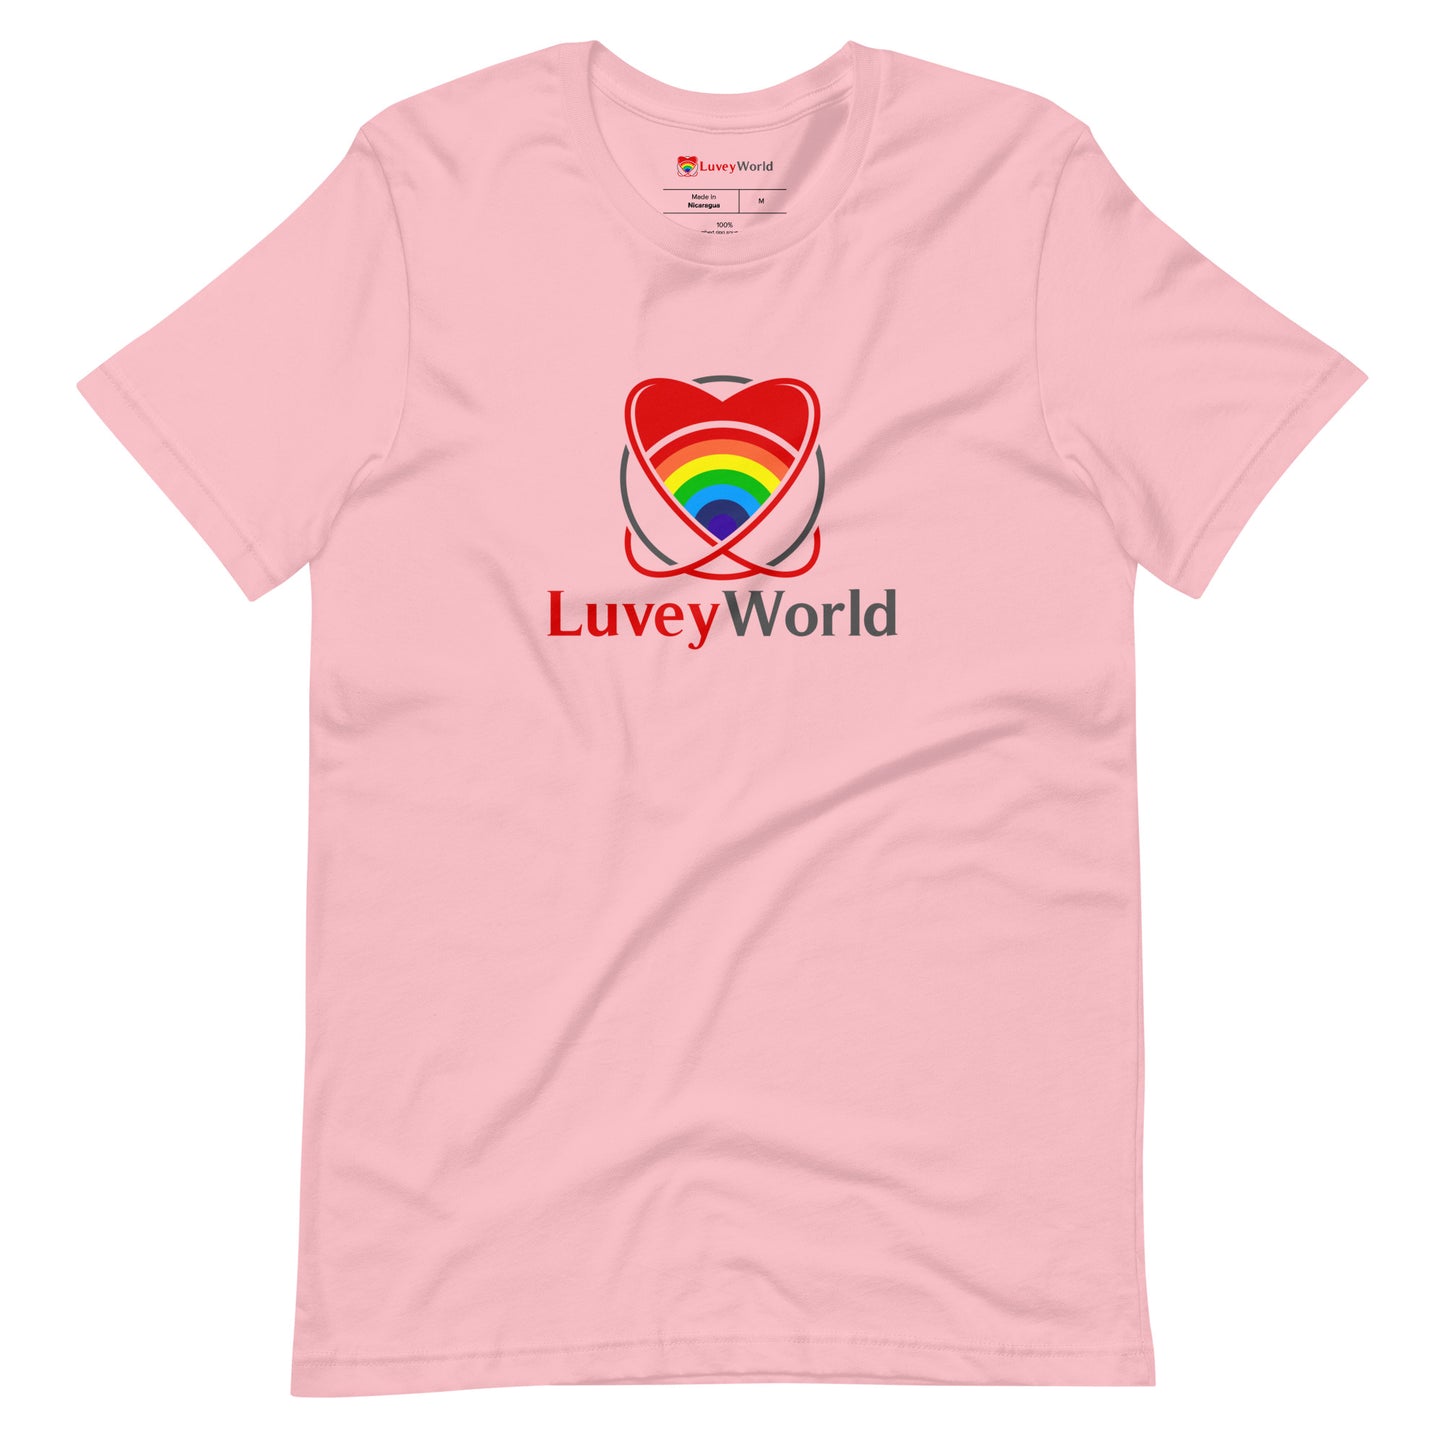 LuveyWorld basic t-shirt